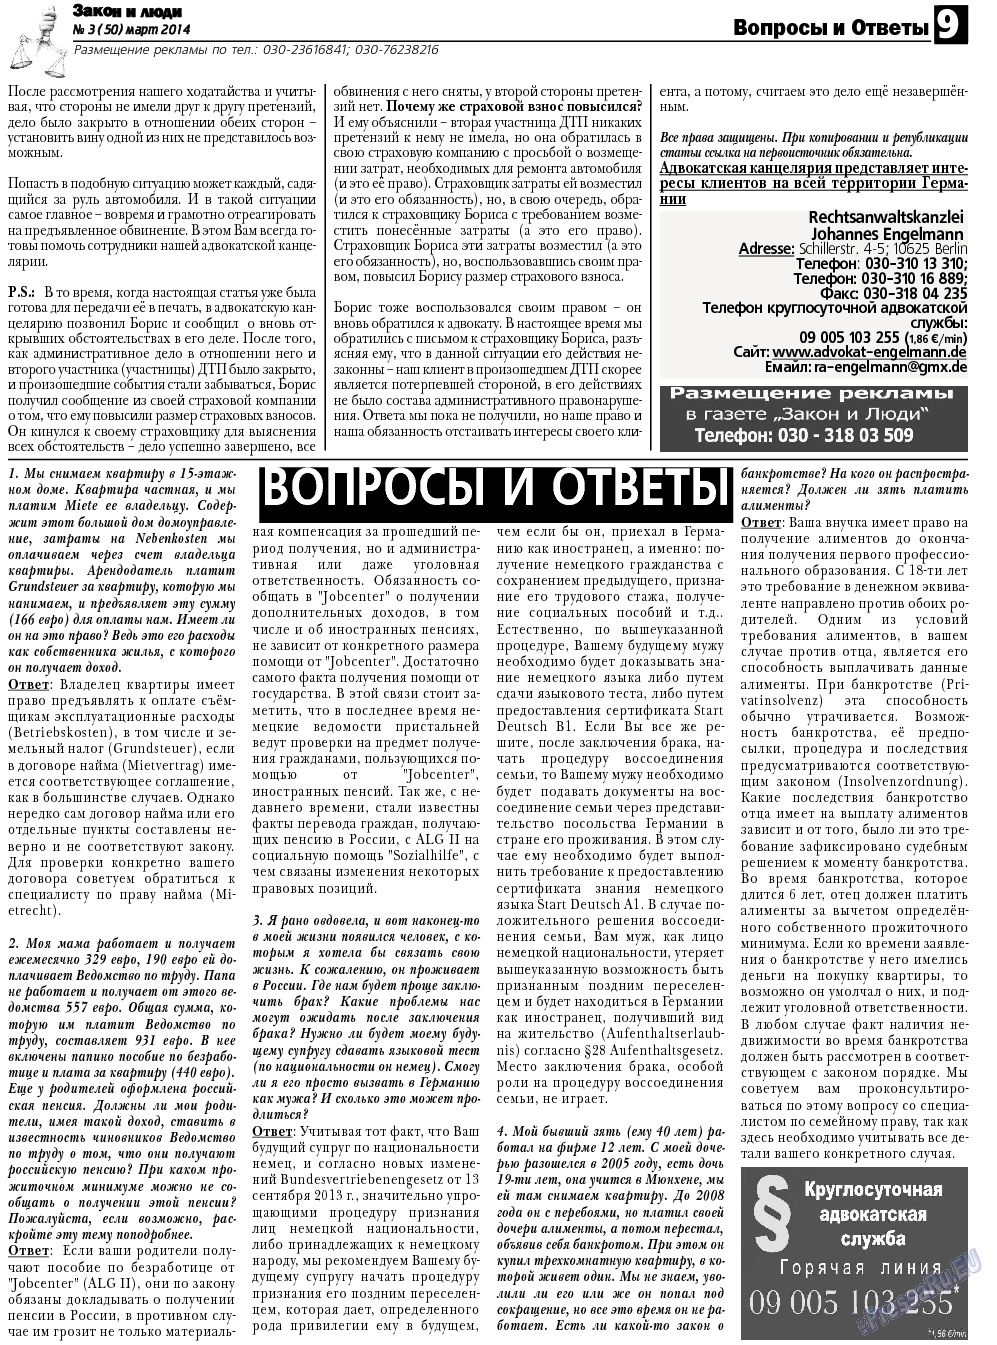 Закон и люди, газета. 2014 №3 стр.9